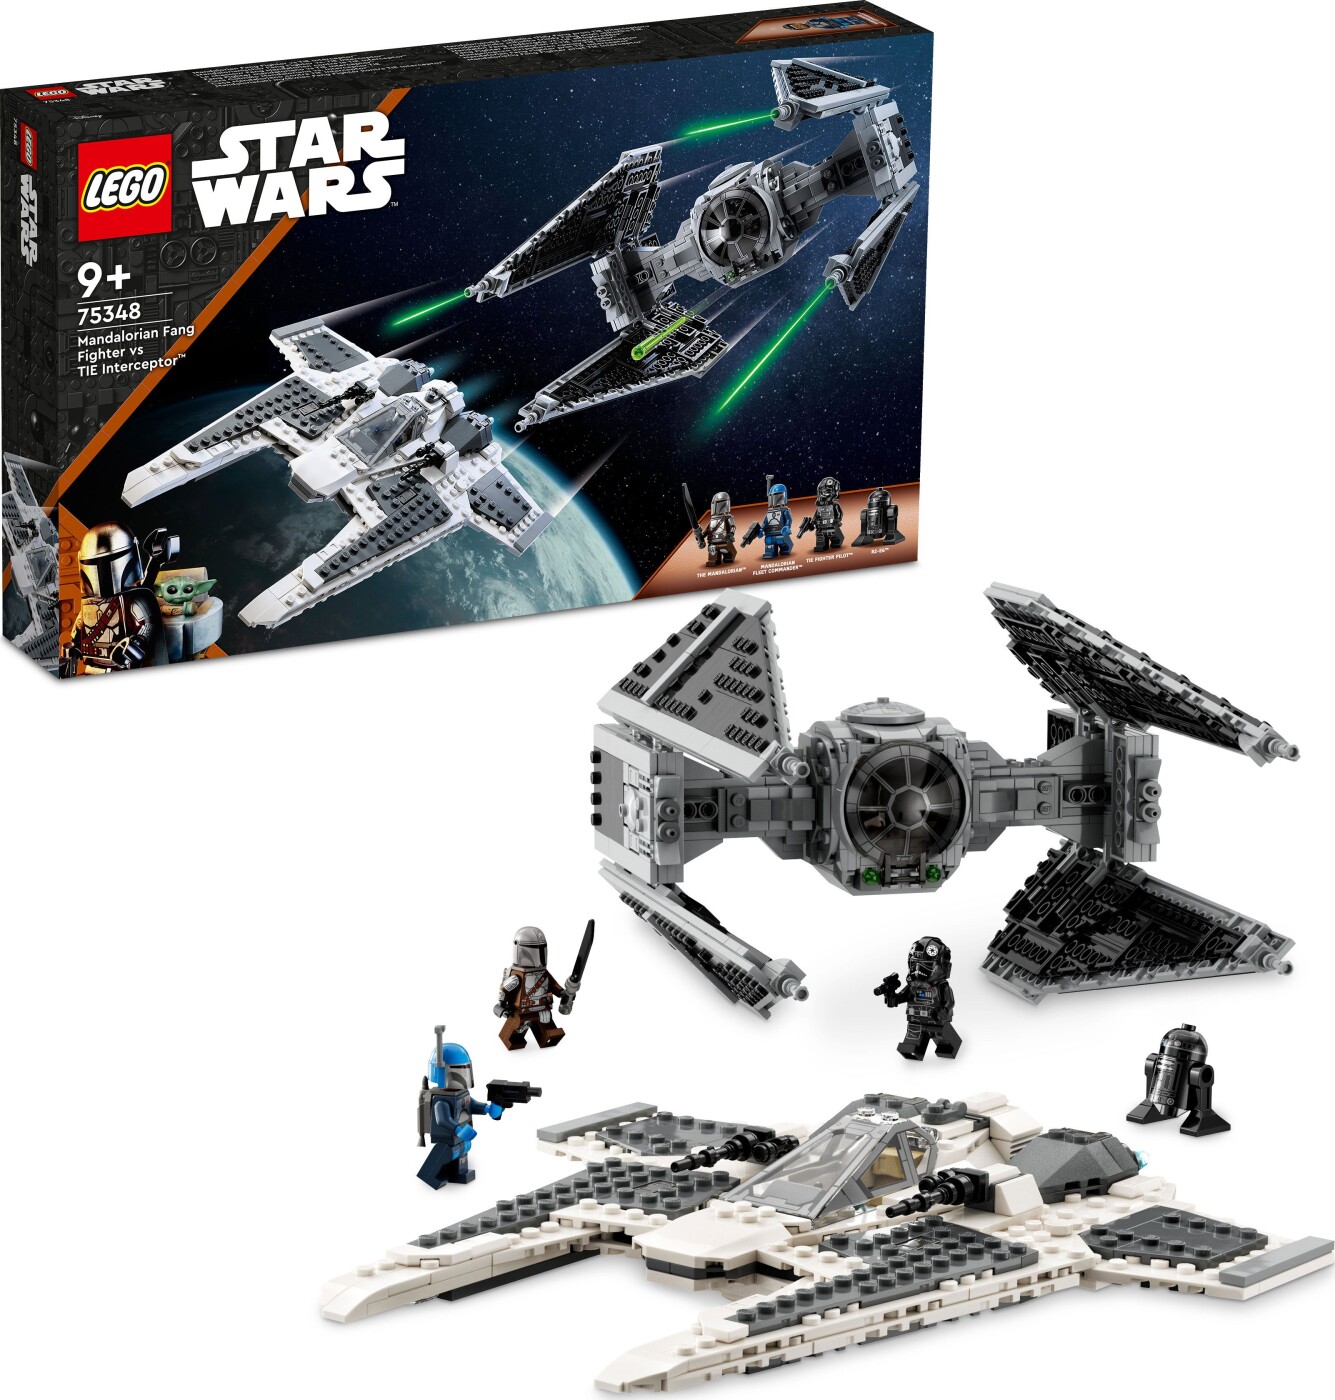 Billede af Lego Star Wars - Mandaloriansk Fang-jager Vs Tie Interceptor - 75348